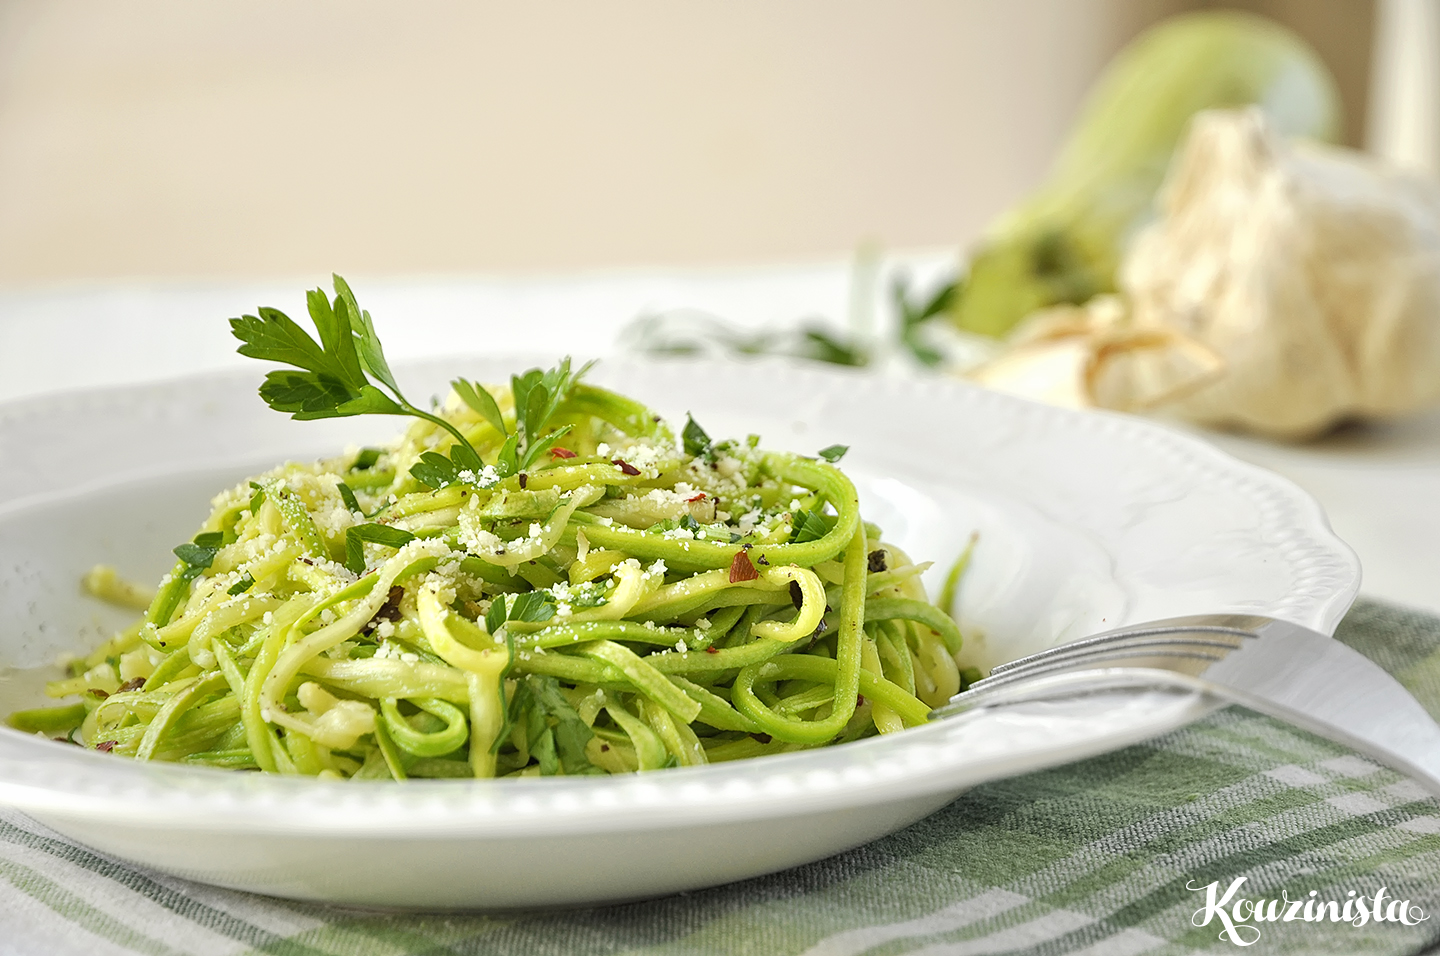 Ζεστή σαλάτα με κολοκυθάκια και σκορδόλαδο / Garlic zucchini noodles